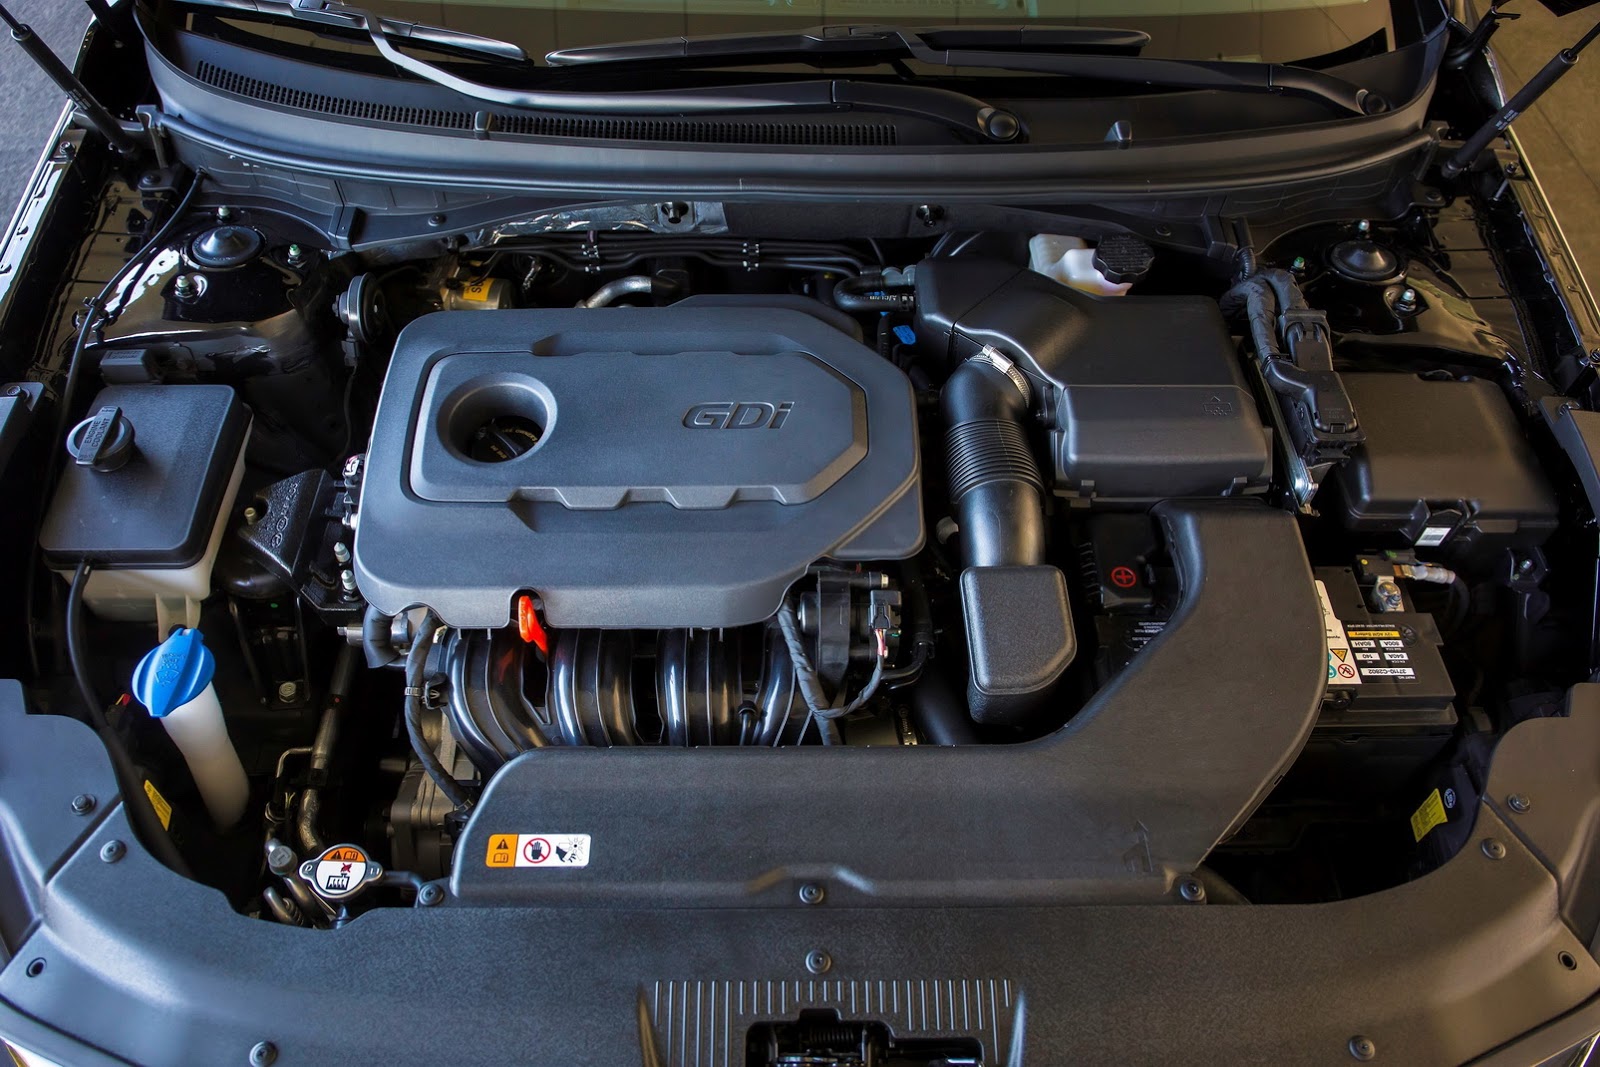 
Tại thị trường Mỹ, Hyundai Sonata 2017 bản tiêu chuẩn sử dụng động cơ xăng Theta II GDI, dung tích 2,4 lít, sản sinh công suất tối đa 185 mã lực và mô-men xoắn cực đại 241 Nm. 
